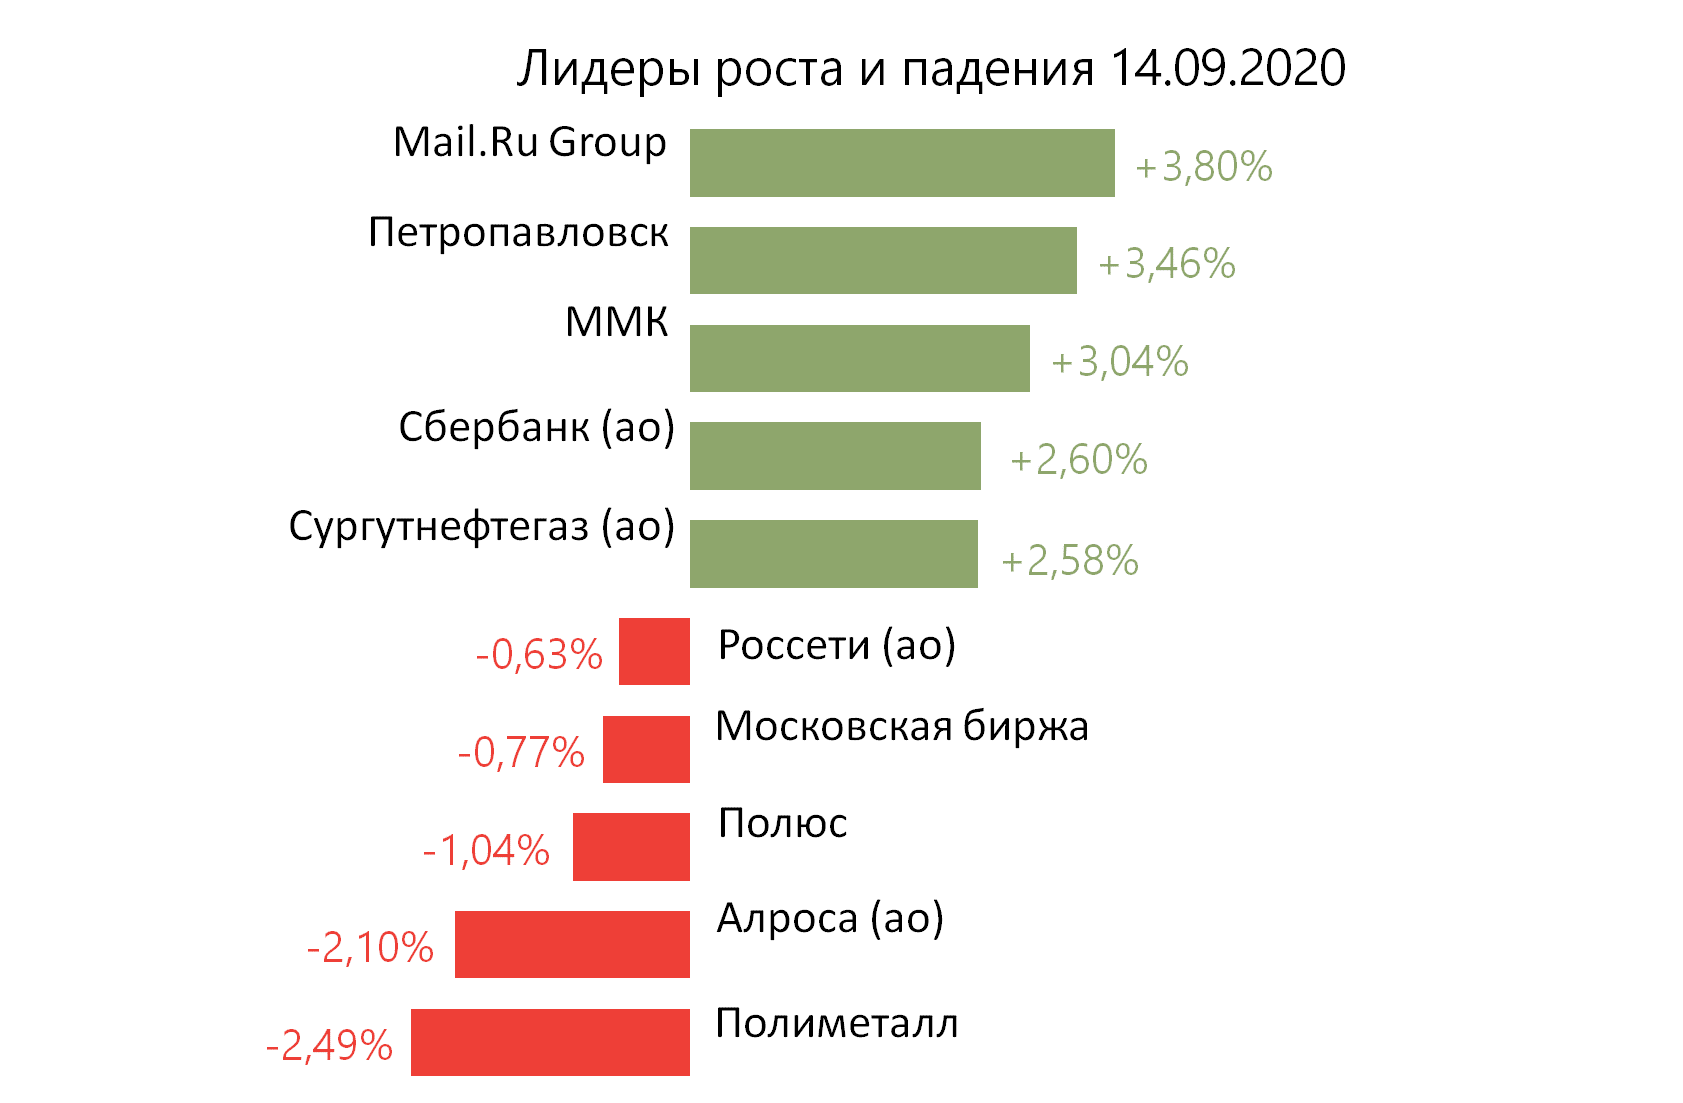 Лидеры роста и падения российского рынка на 14 сентября